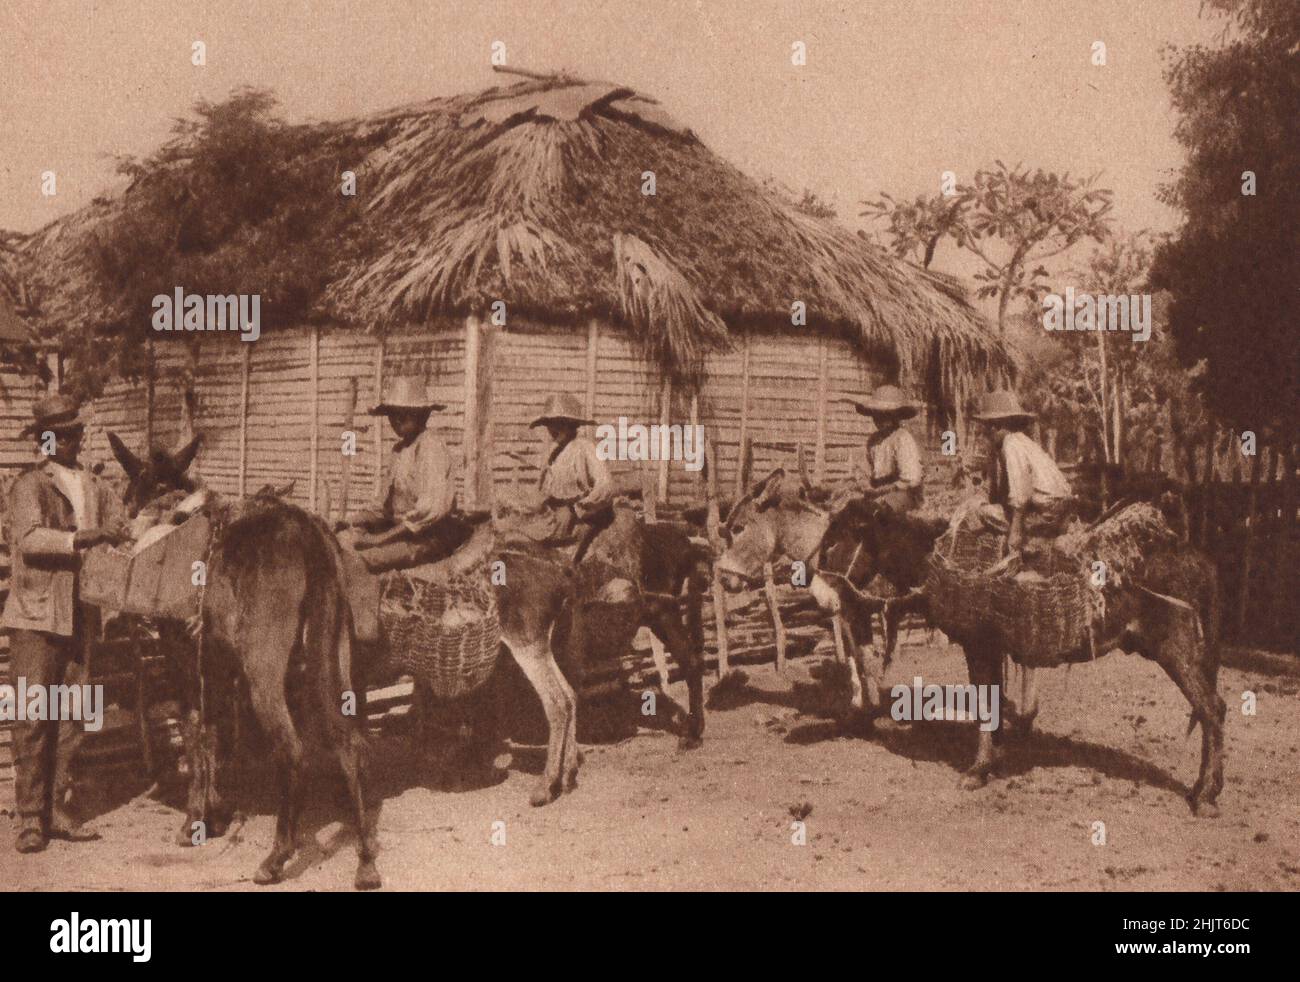 Les deux tiers de l'île d'Haïti sont la république de Saint-Domingue. Ces lads de ferme dominicains se préparent pour le marché. Antilles (1923) Banque D'Images